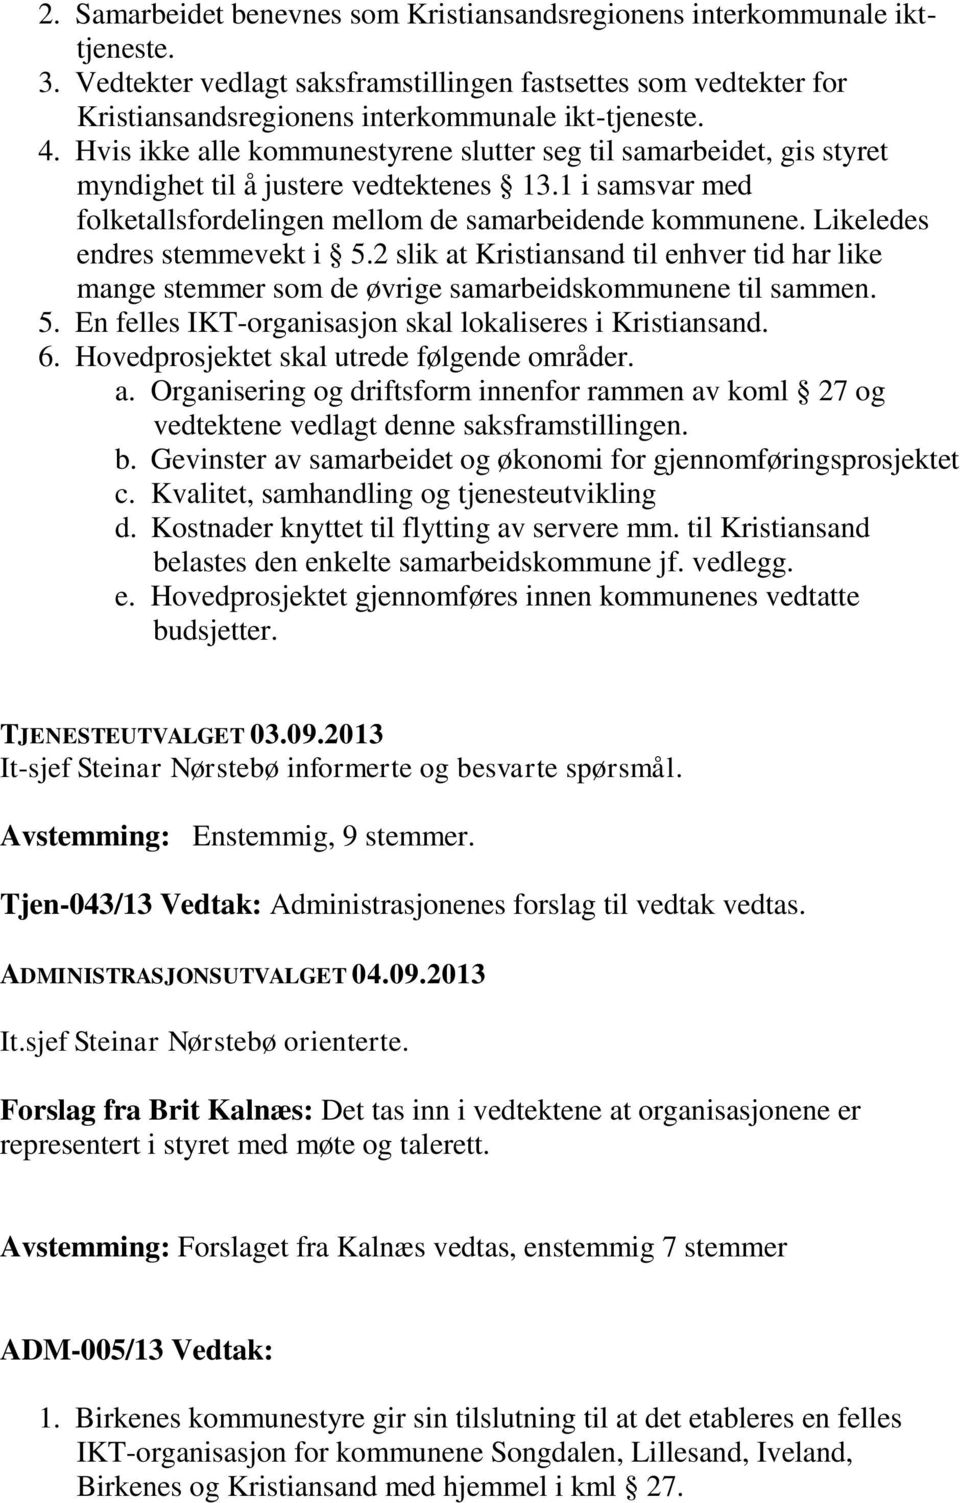 Likeledes endres stemmevekt i 5.2 slik at Kristiansand til enhver tid har like mange stemmer som de øvrige samarbeidskommunene til sammen. 5. En felles IKT-organisasjon skal lokaliseres i Kristiansand.